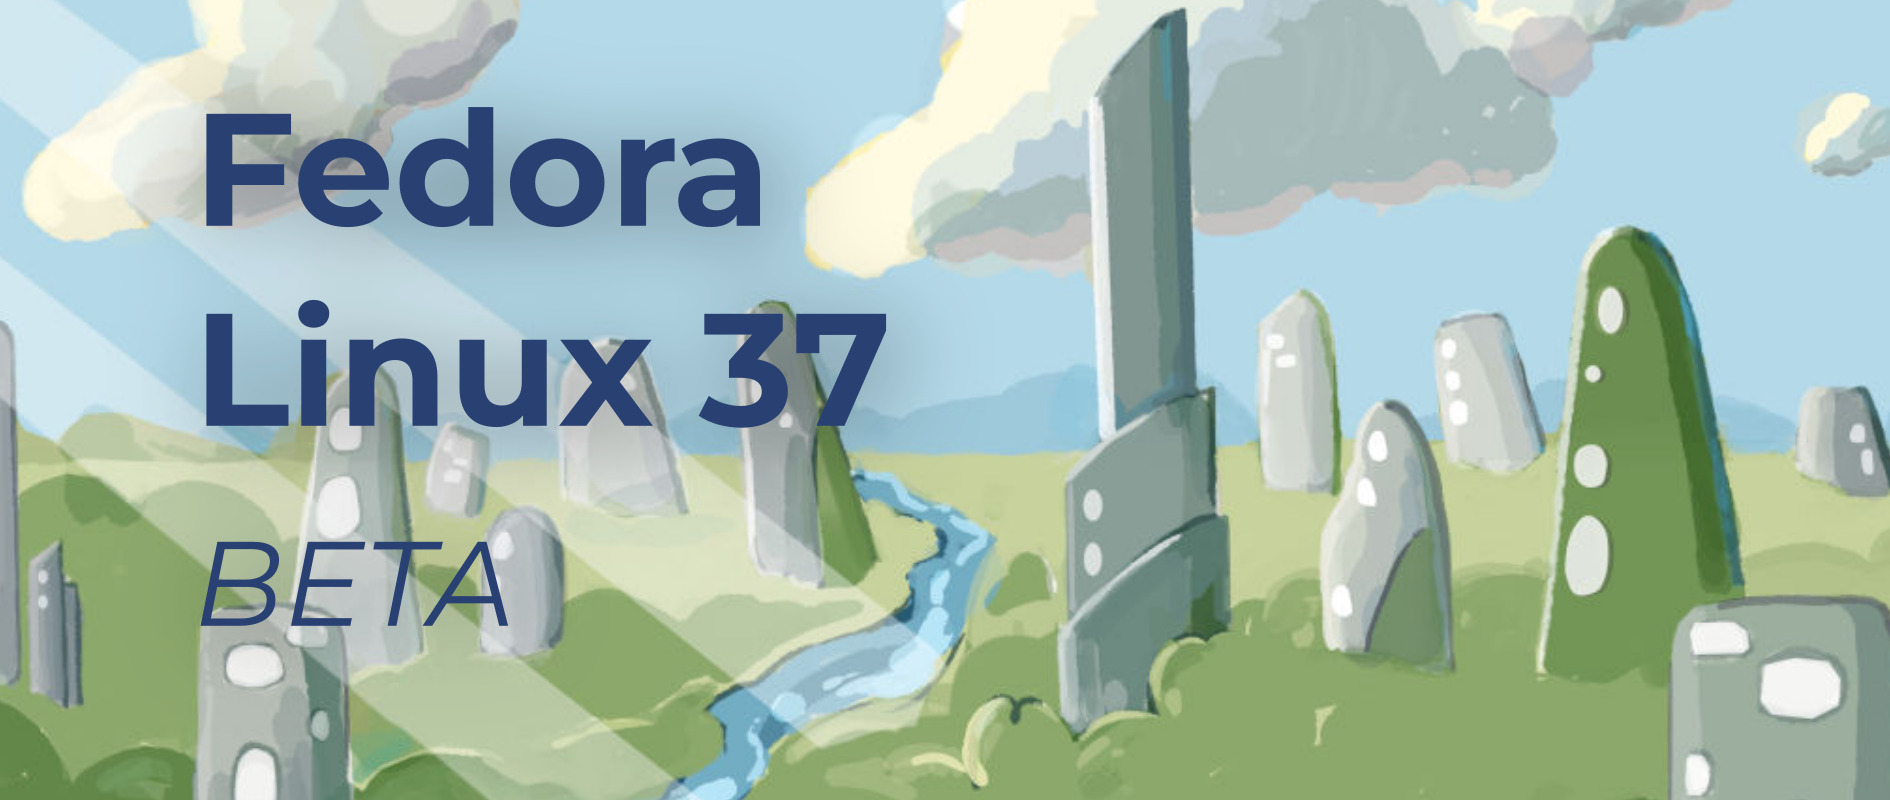 fedora 37 beta veröffentlicht